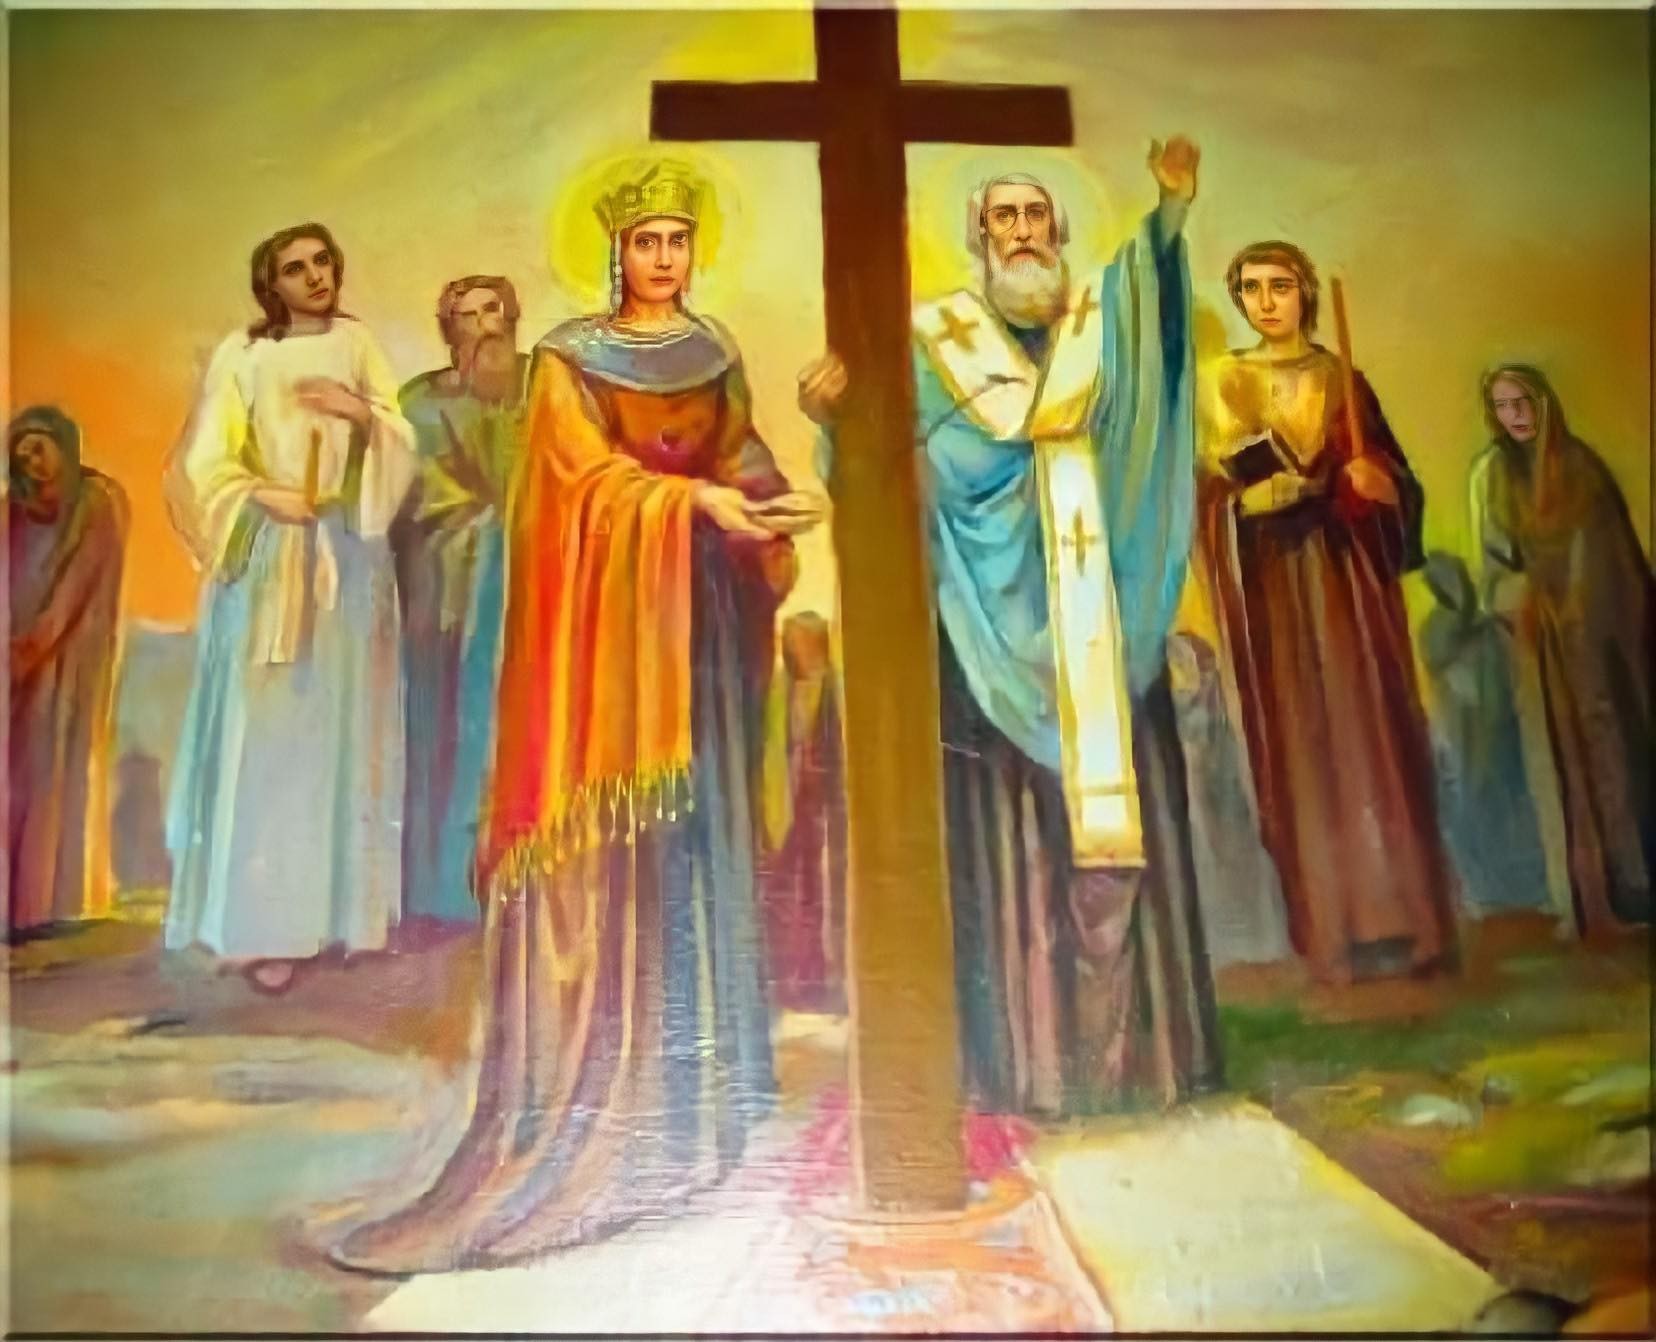 Սուրբ Կոստանդիանոս թագավորի և նրա մոր` Հեղինեի հիշատակության օրն է այսօր